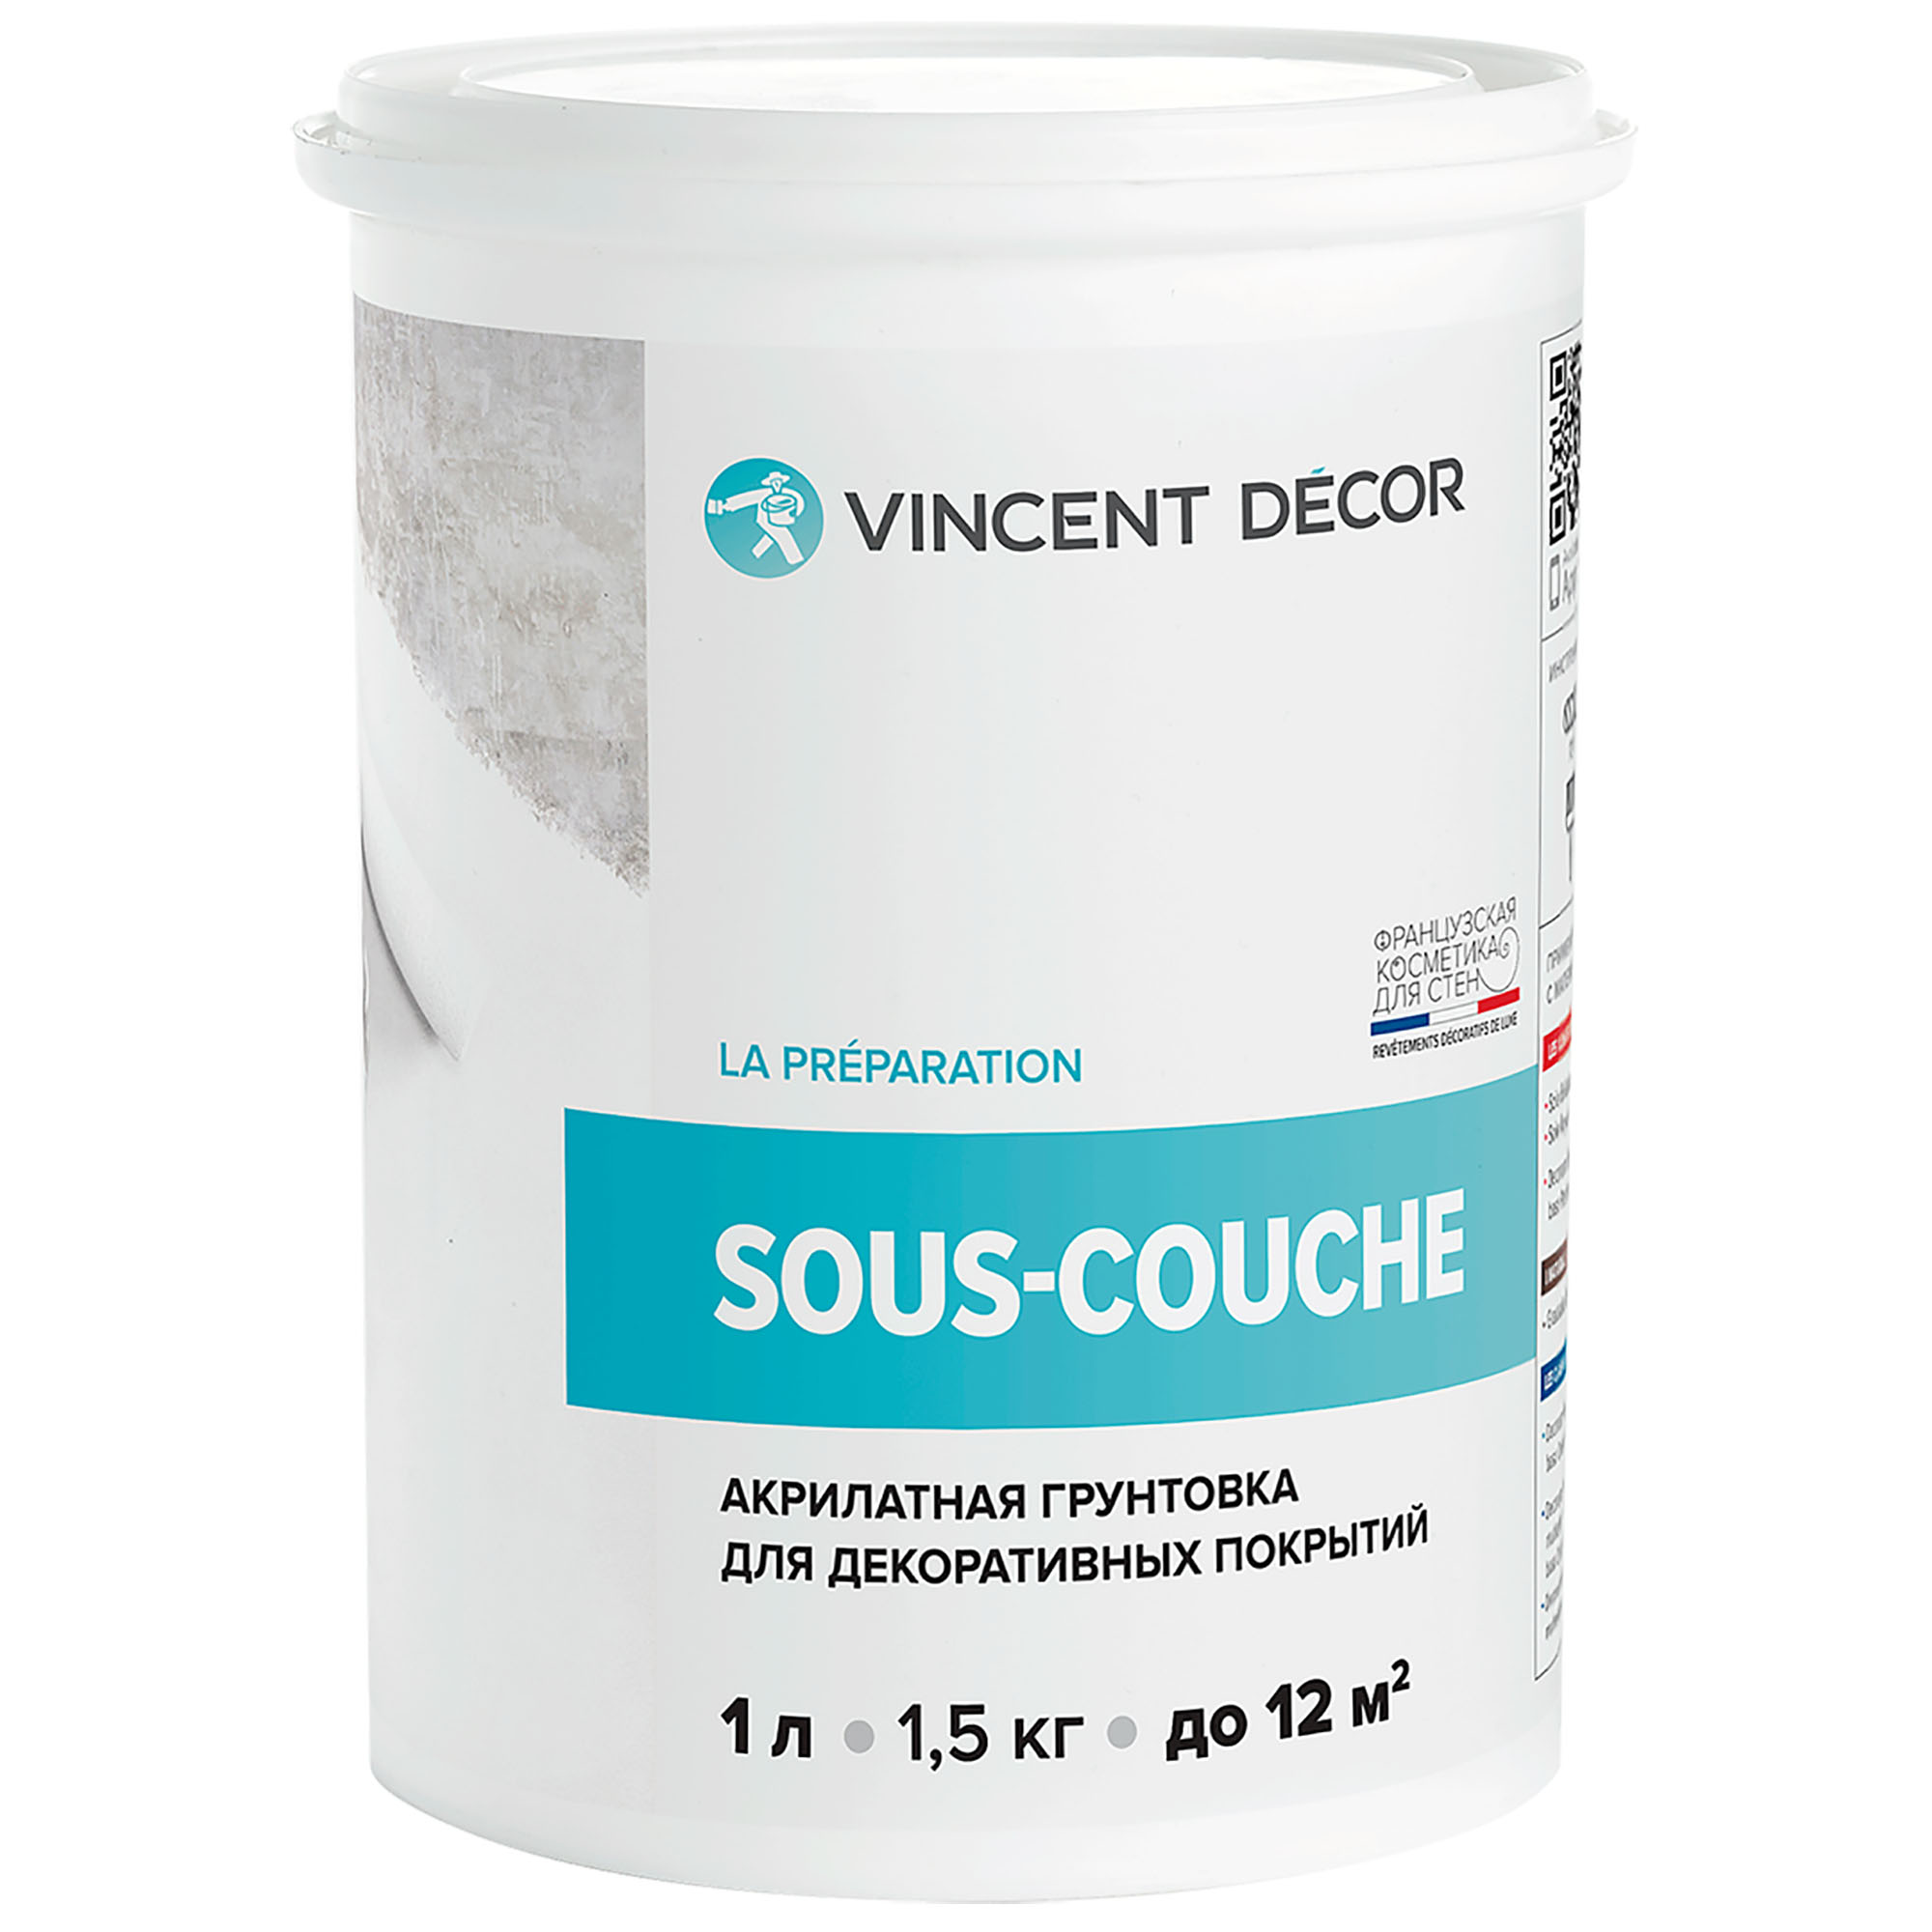 Грунтовка для декоративных покрытий Vincent Decor Sous-couche 1 л грунтовка для защиты древесины vincent